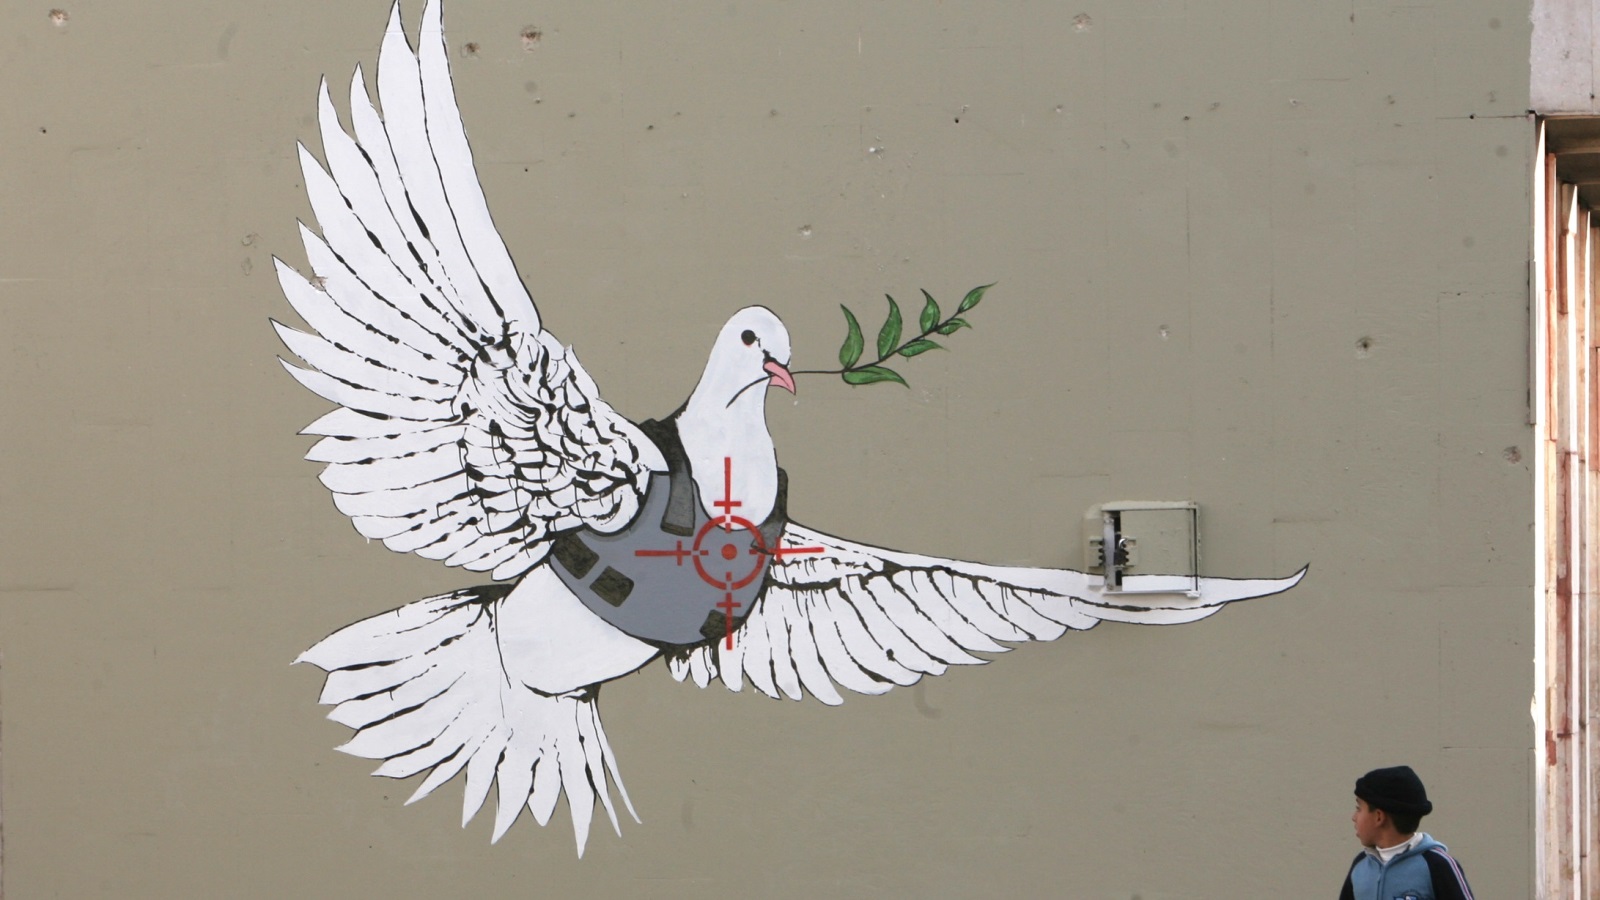 غرافيتي جدار الفصل يتسم بالجمالية لدى القارئ المؤيد للقضية الفلسطينية، ويتسم بالقبح لدى القارئ المؤيد لسياسة الاحتلال، فمعايير الجمال تختلف باختلاف منظور الشخص